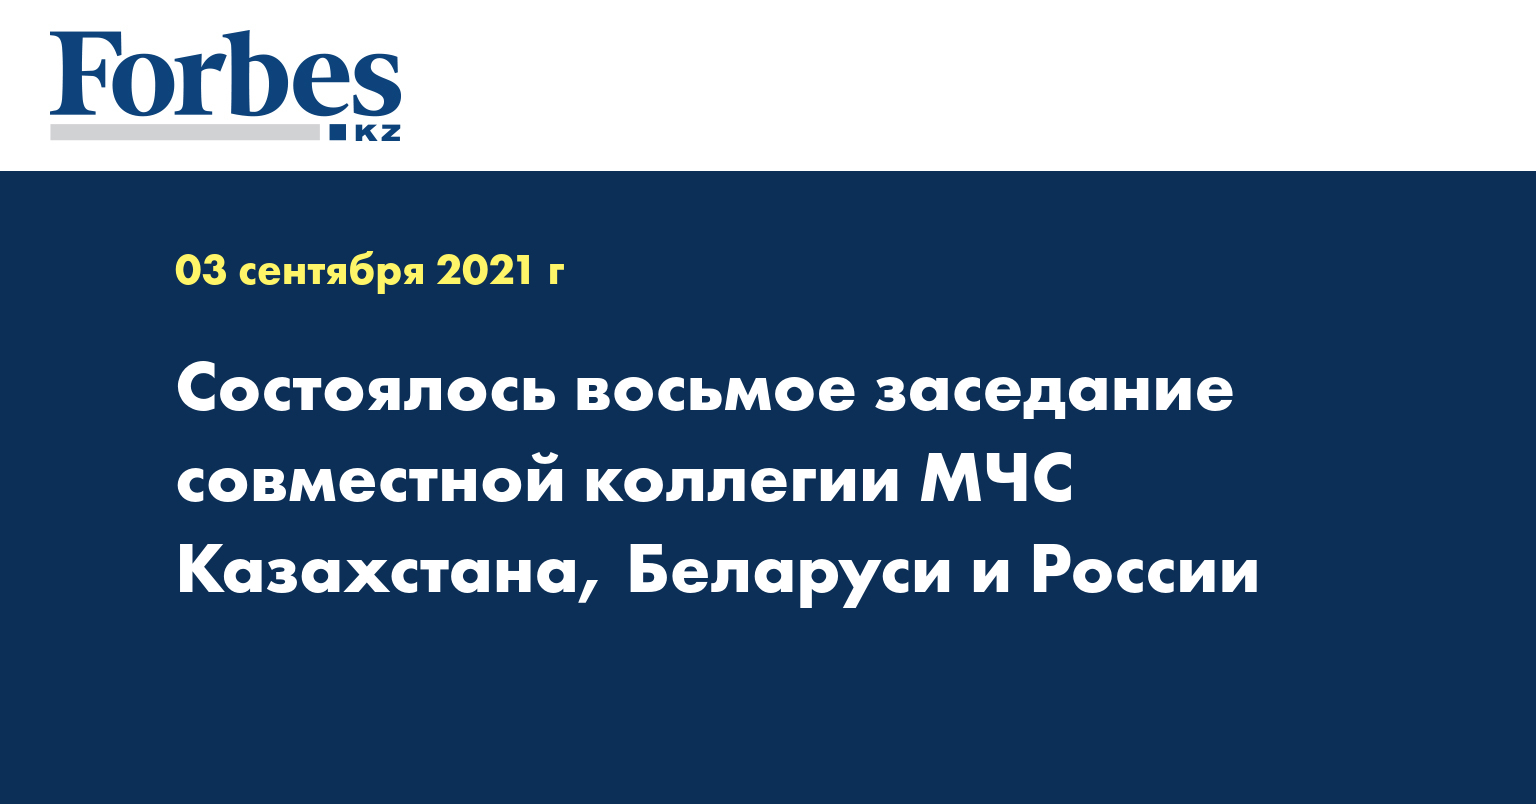 Состоялось восьмое заседание совместной коллегии МЧС Казахстана, Беларуси и России